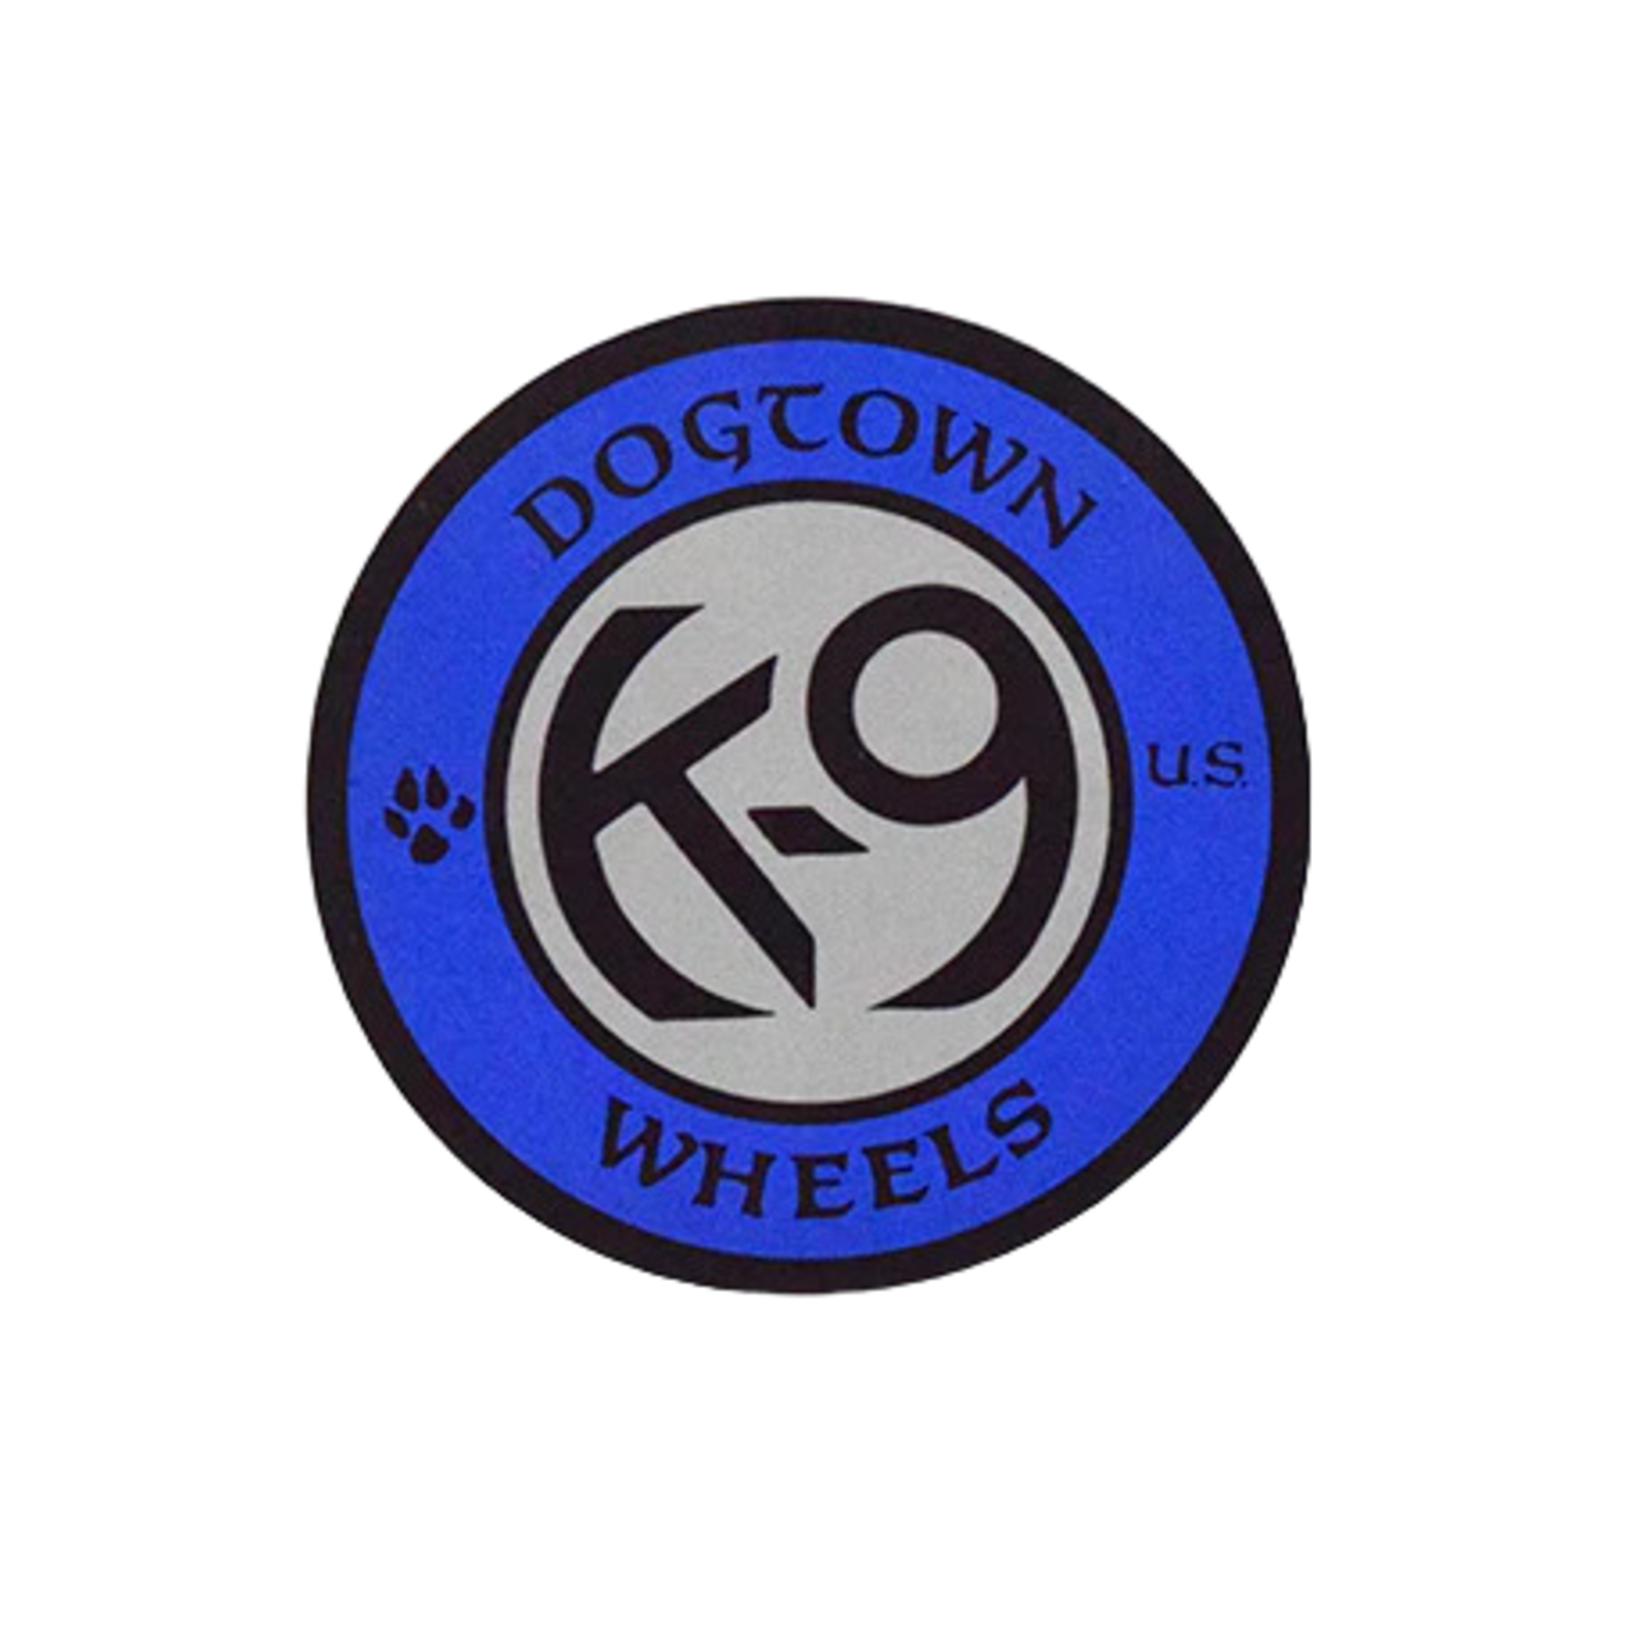 Dogtown Dogtown K-9 Wheels Sticker - 4" - Asst'd Colors